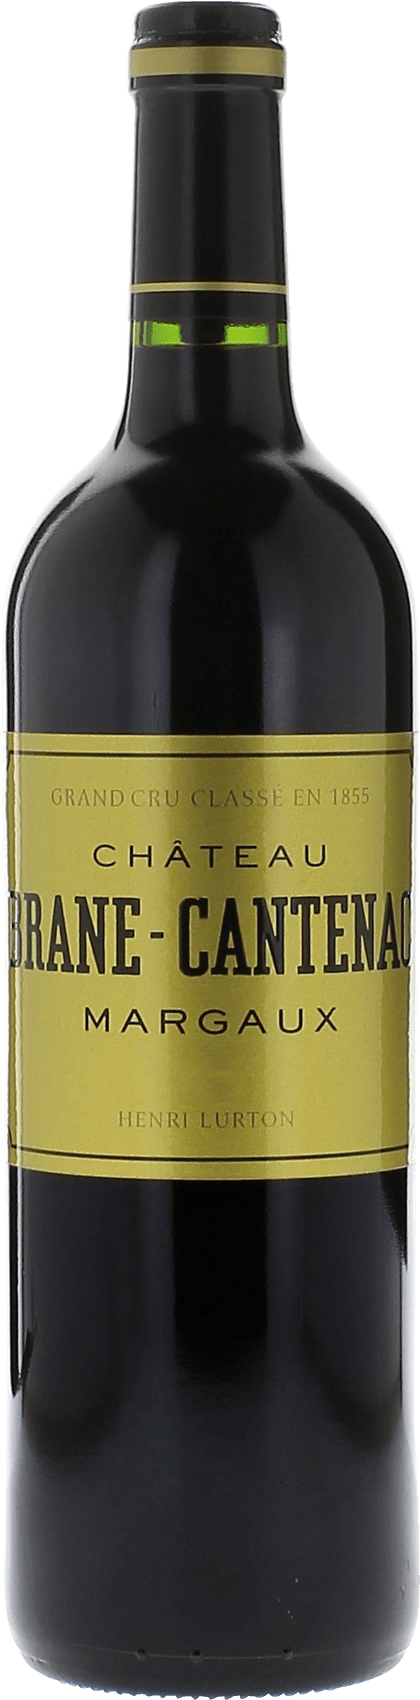 Brane cantenac 2012 2me Grand cru class Margaux, Bordeaux rouge